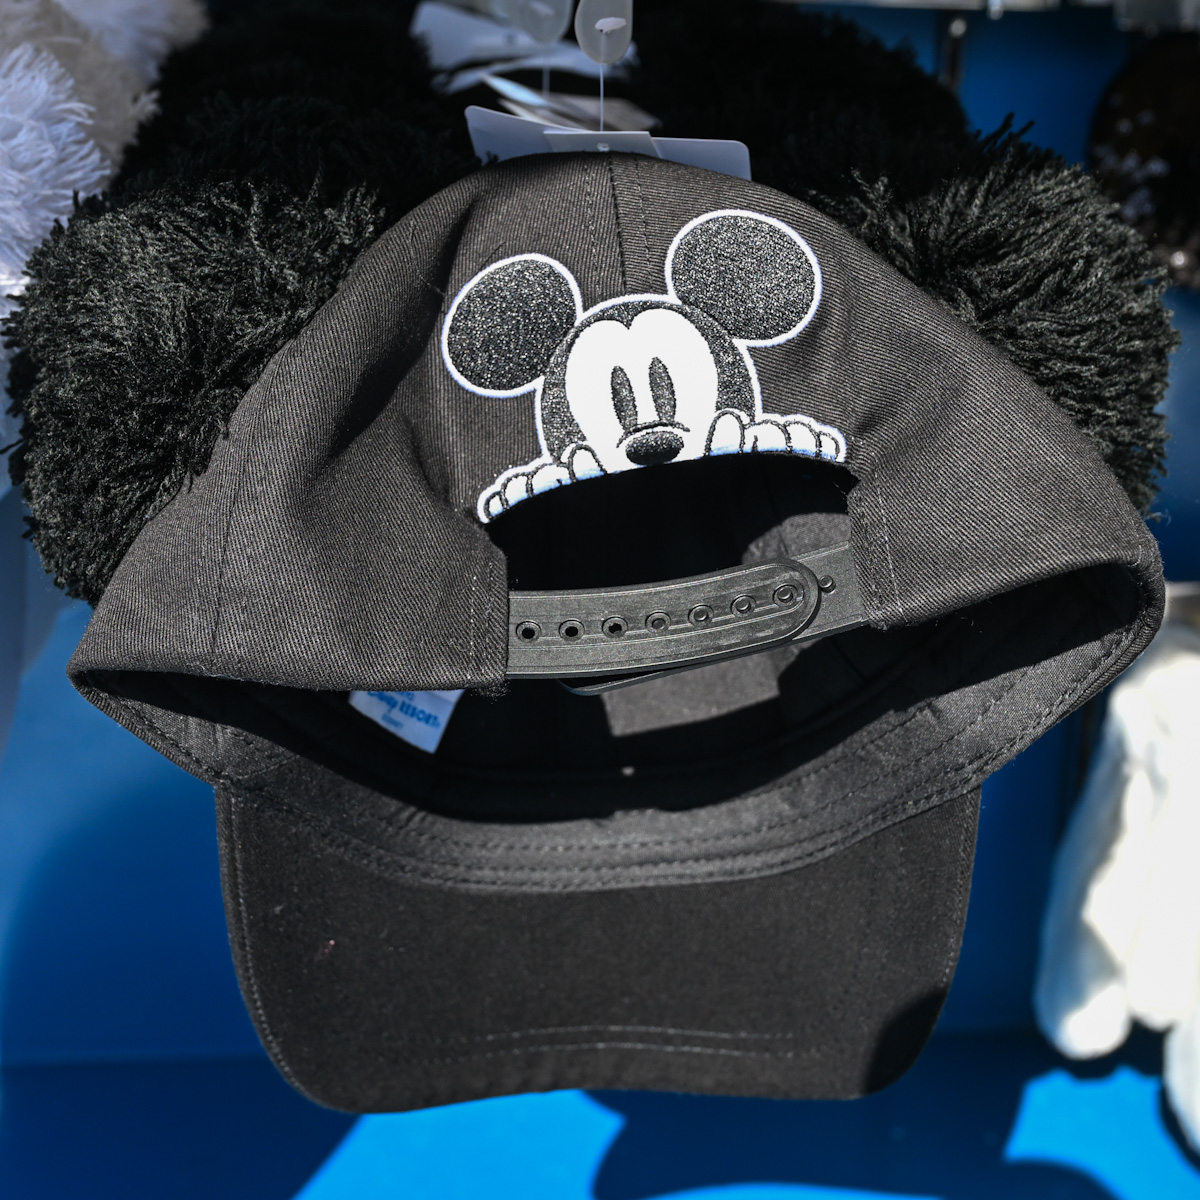 まもなく販売 新発売 ディズニー ミッキー 耳つき ボアハット バケットハット キャップ 帽子 最大級通販:1353円 ブランド:ディズニー  帽子